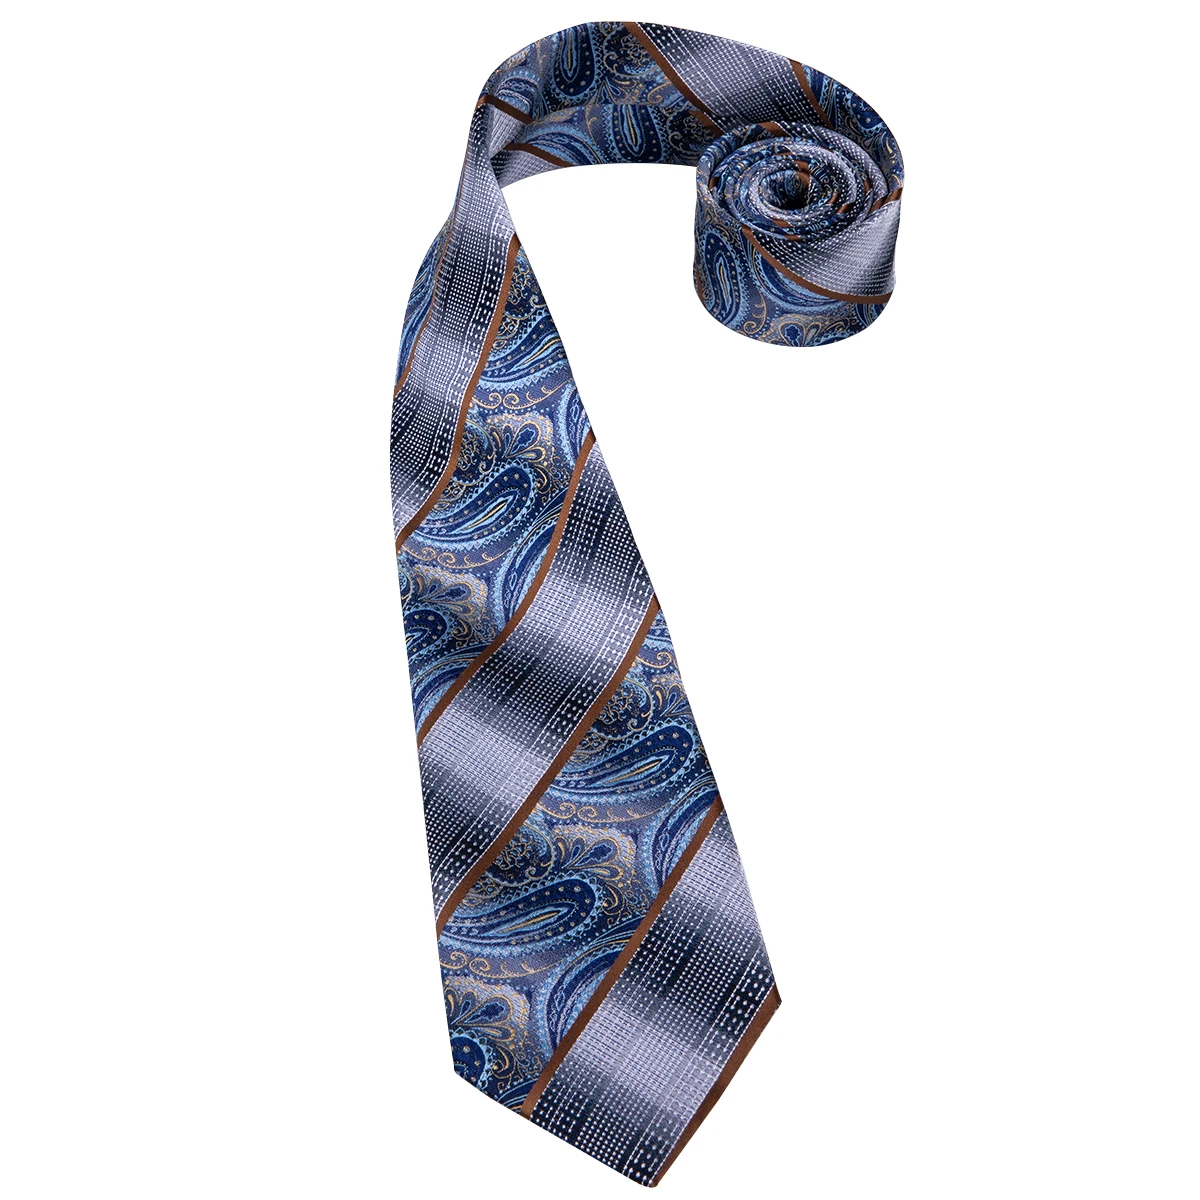 Hi-Tie роскошный Шелковый мужской модный синий галстук Пейсли Галстук платок Запонки набор мужской свадебный вечерний деловой галстук набор C-3110